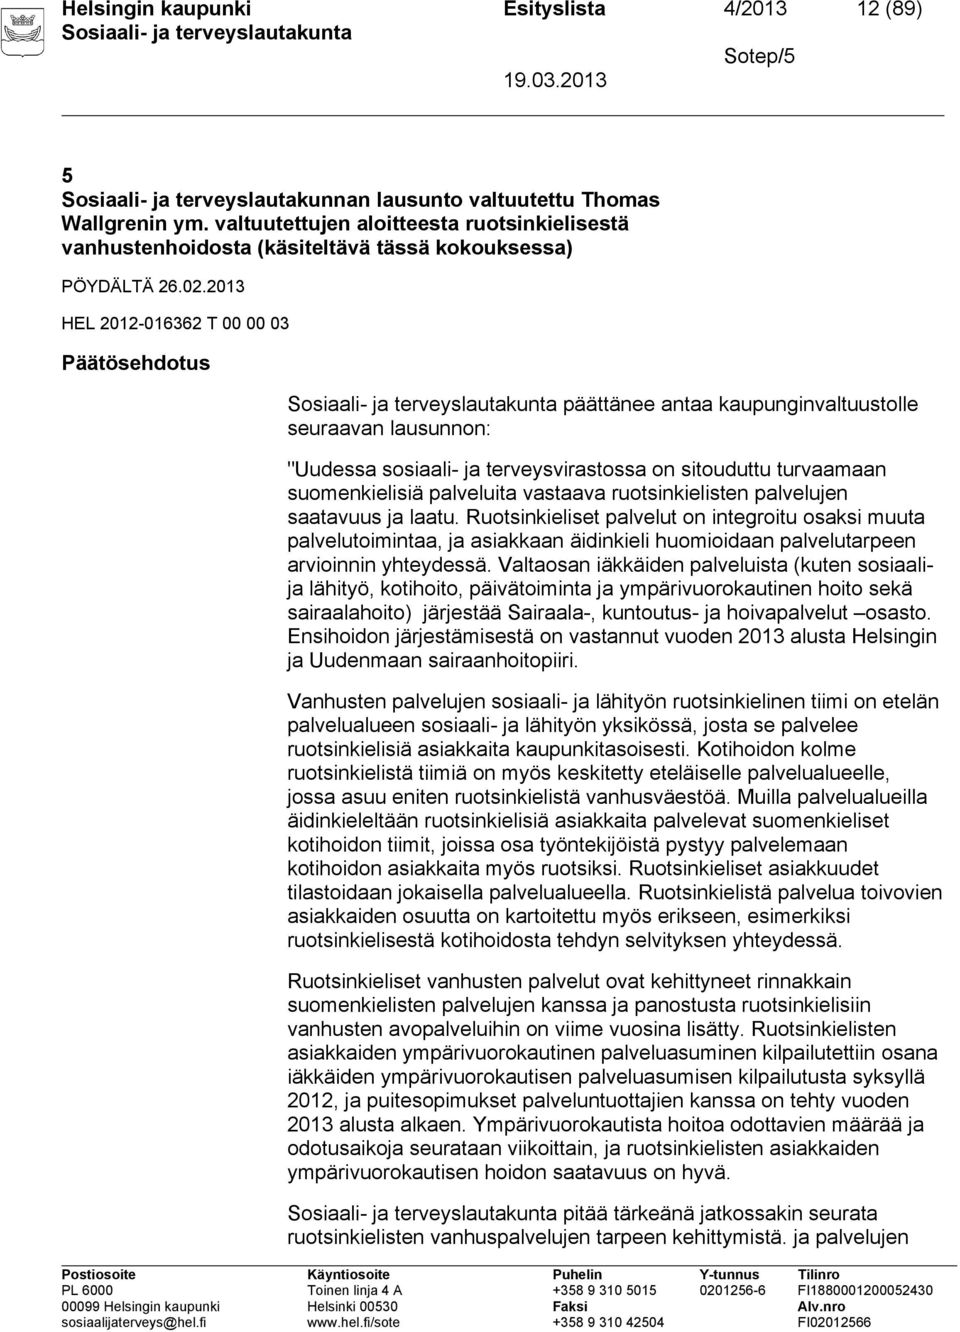 2013 HEL 2012-016362 T 00 00 03 Päätösehdotus päättänee antaa kaupunginvaltuustolle seuraavan lausunnon: "Uudessa sosiaali- ja terveysvirastossa on sitouduttu turvaamaan suomenkielisiä palveluita